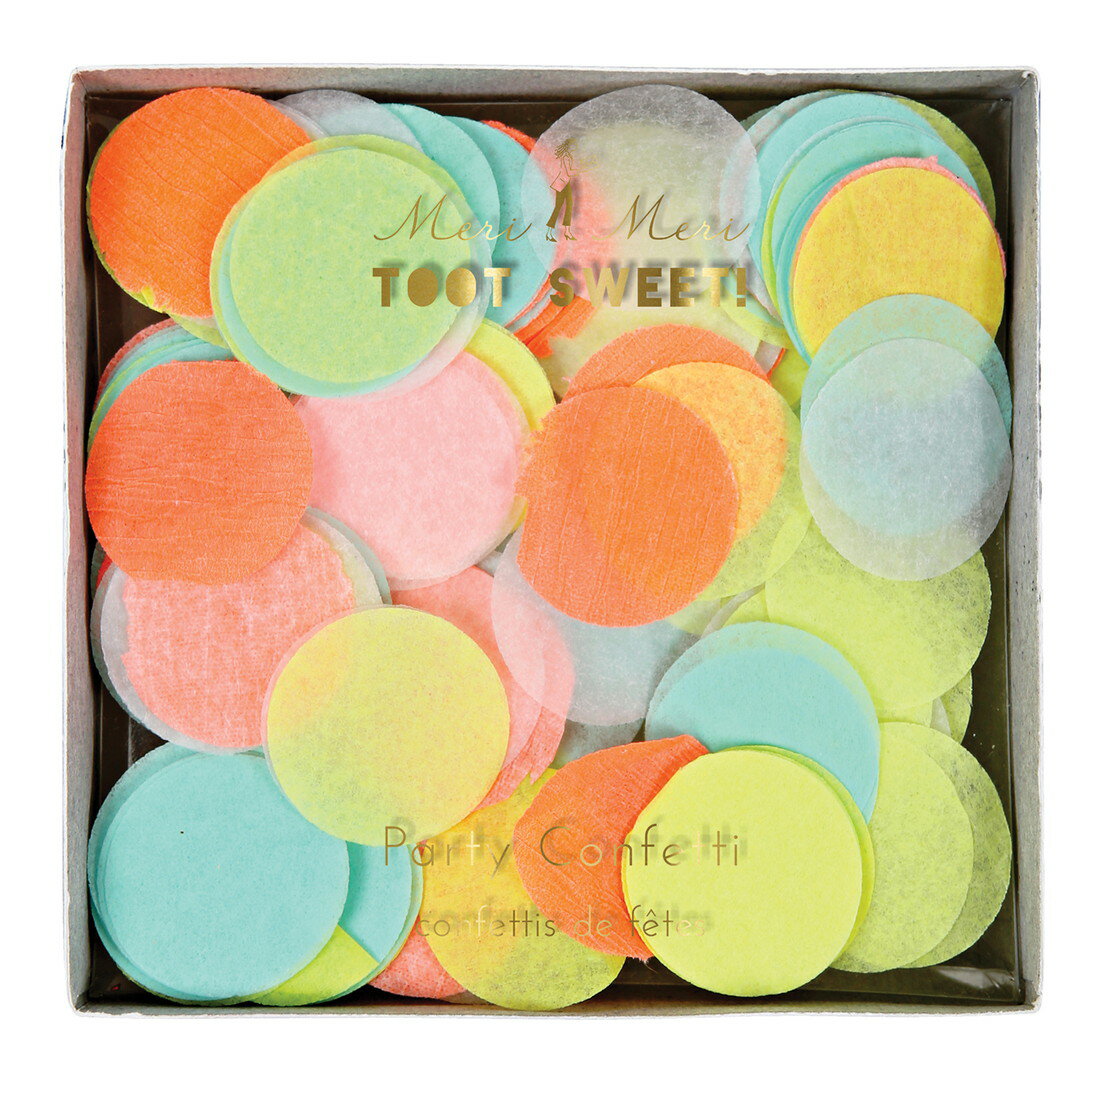 Neon party confetti TOOT SWEET! 143110／45-2107 ネオンカラーの紙吹雪でパーティーを盛り上げよう！ サイズ(センチ) 一片:直径約2.5 パッケージ：約103x103x50